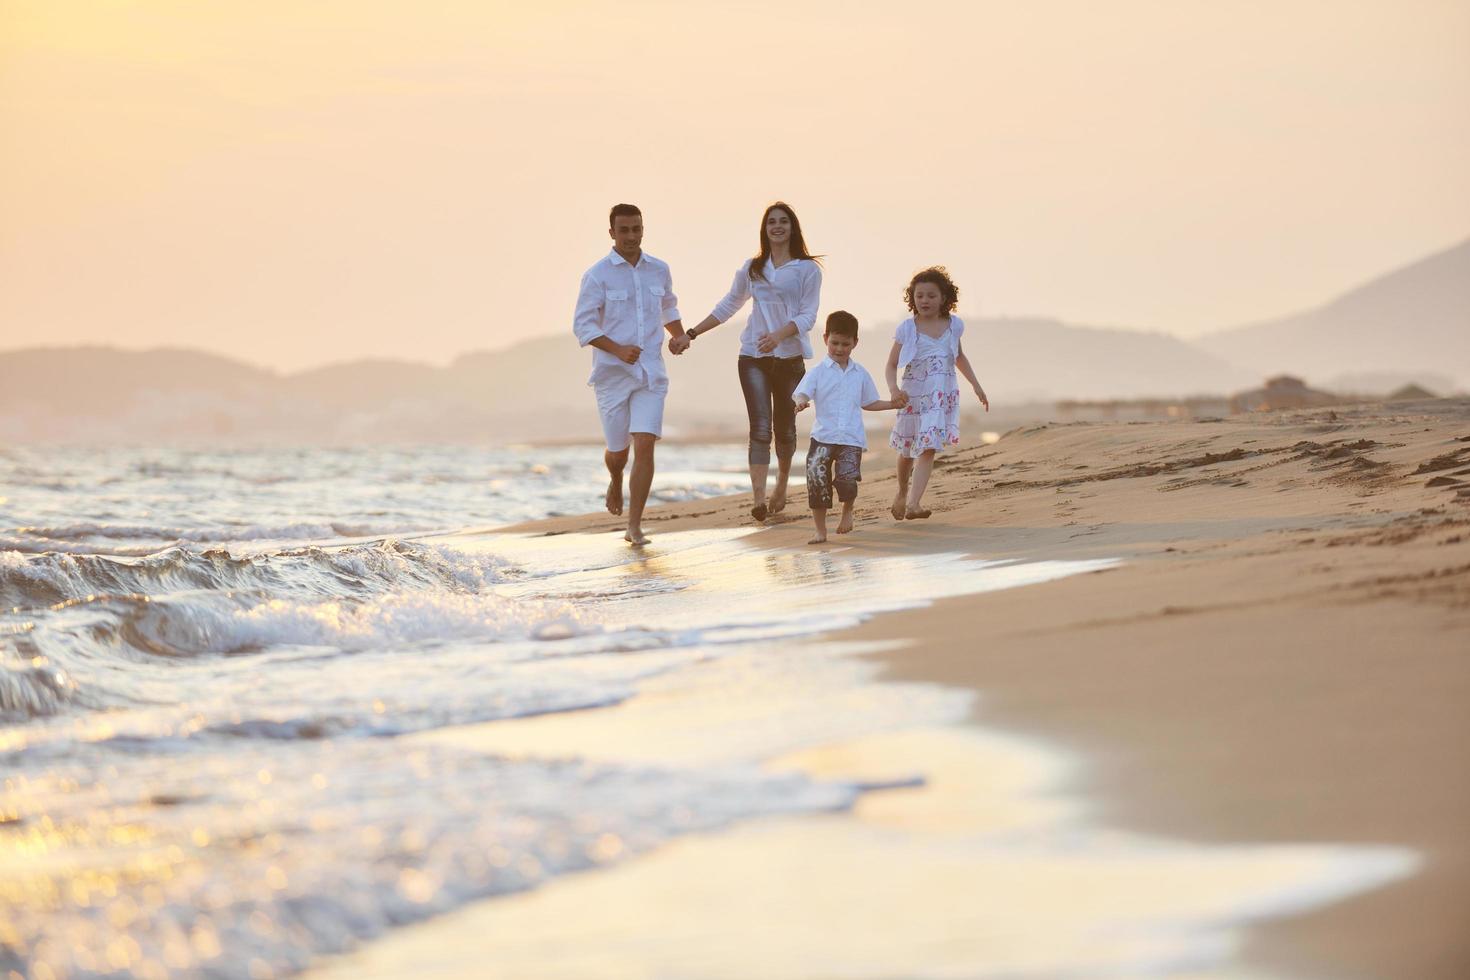 jeune famille heureuse s'amuser sur la plage au coucher du soleil photo